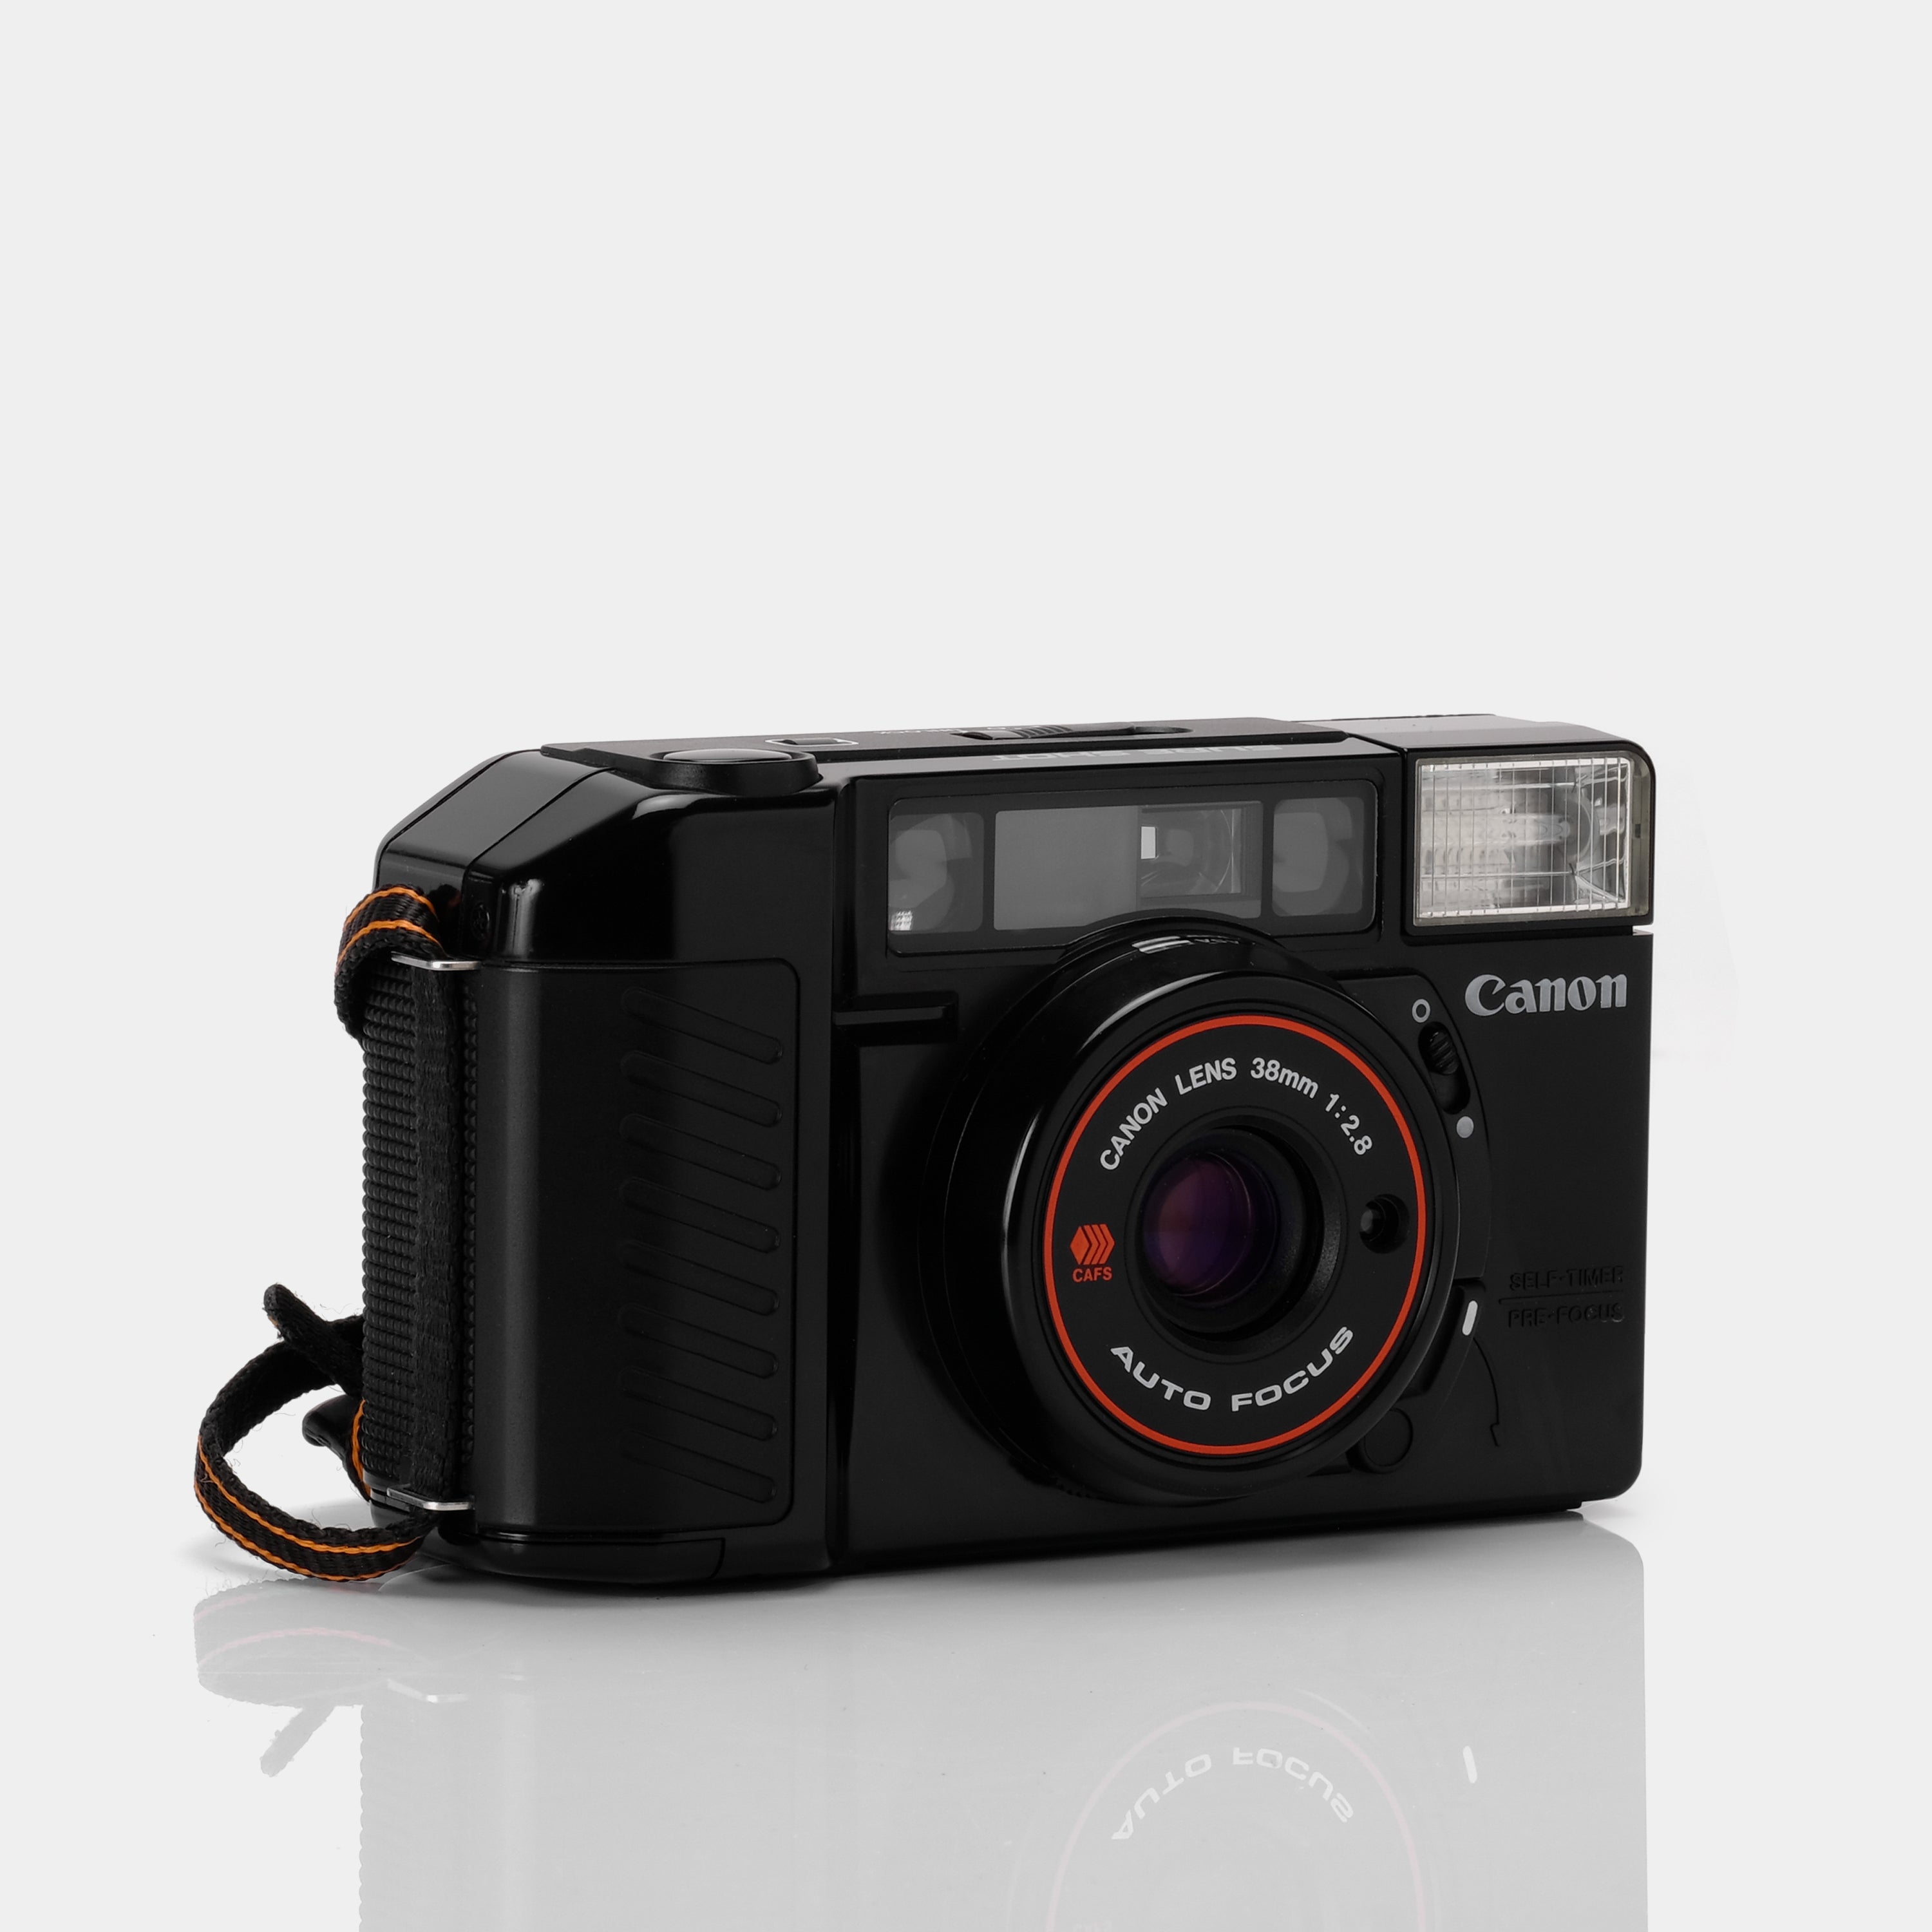 Canon Sure Shot 35mm Scale Focus Film Camera